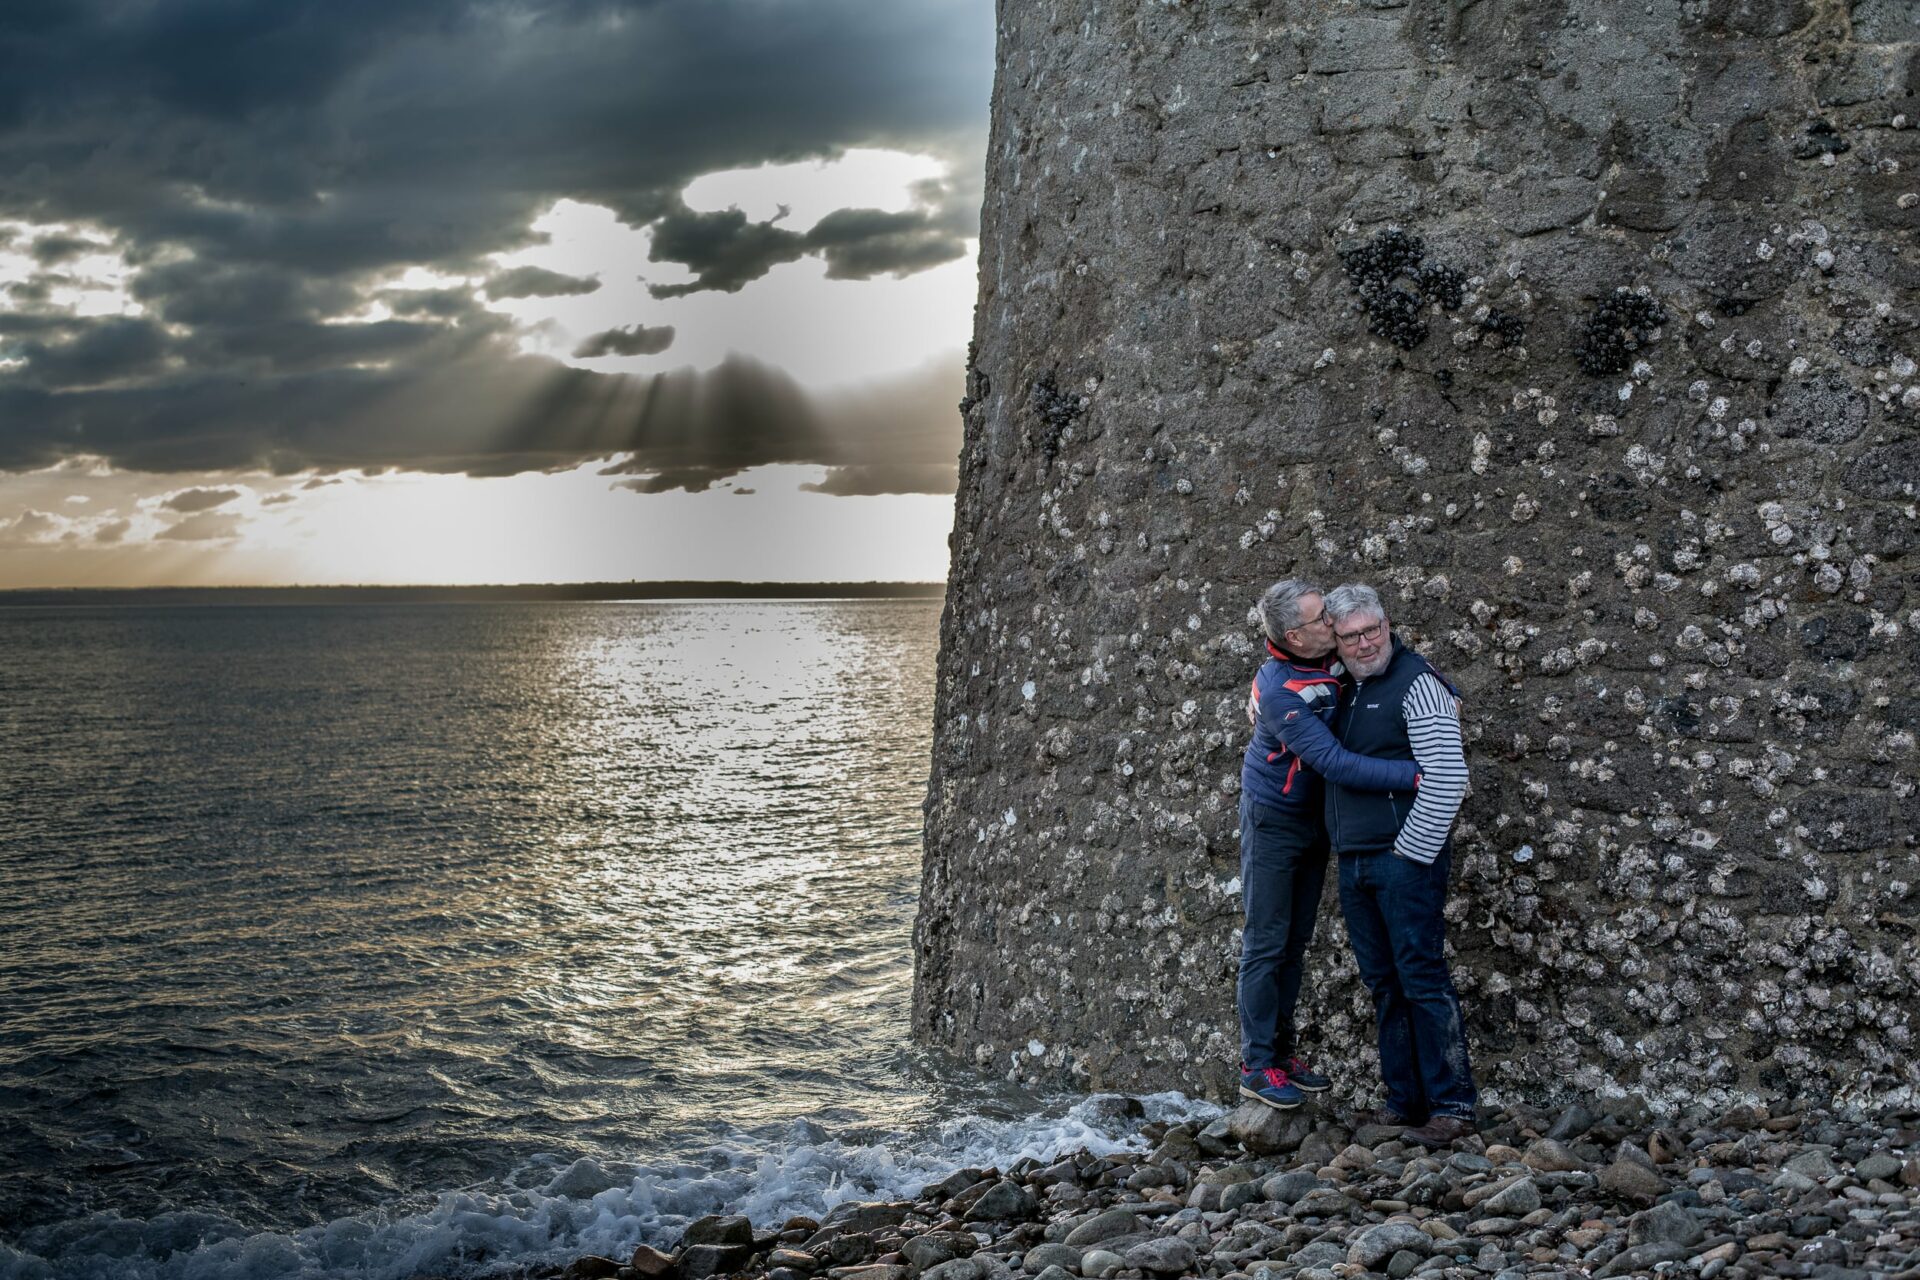 Fin de journée, mer bretonne au pied d'un phare dont on ne voit que le pied, 2 hommes enlacés tendrement dans cette immensité